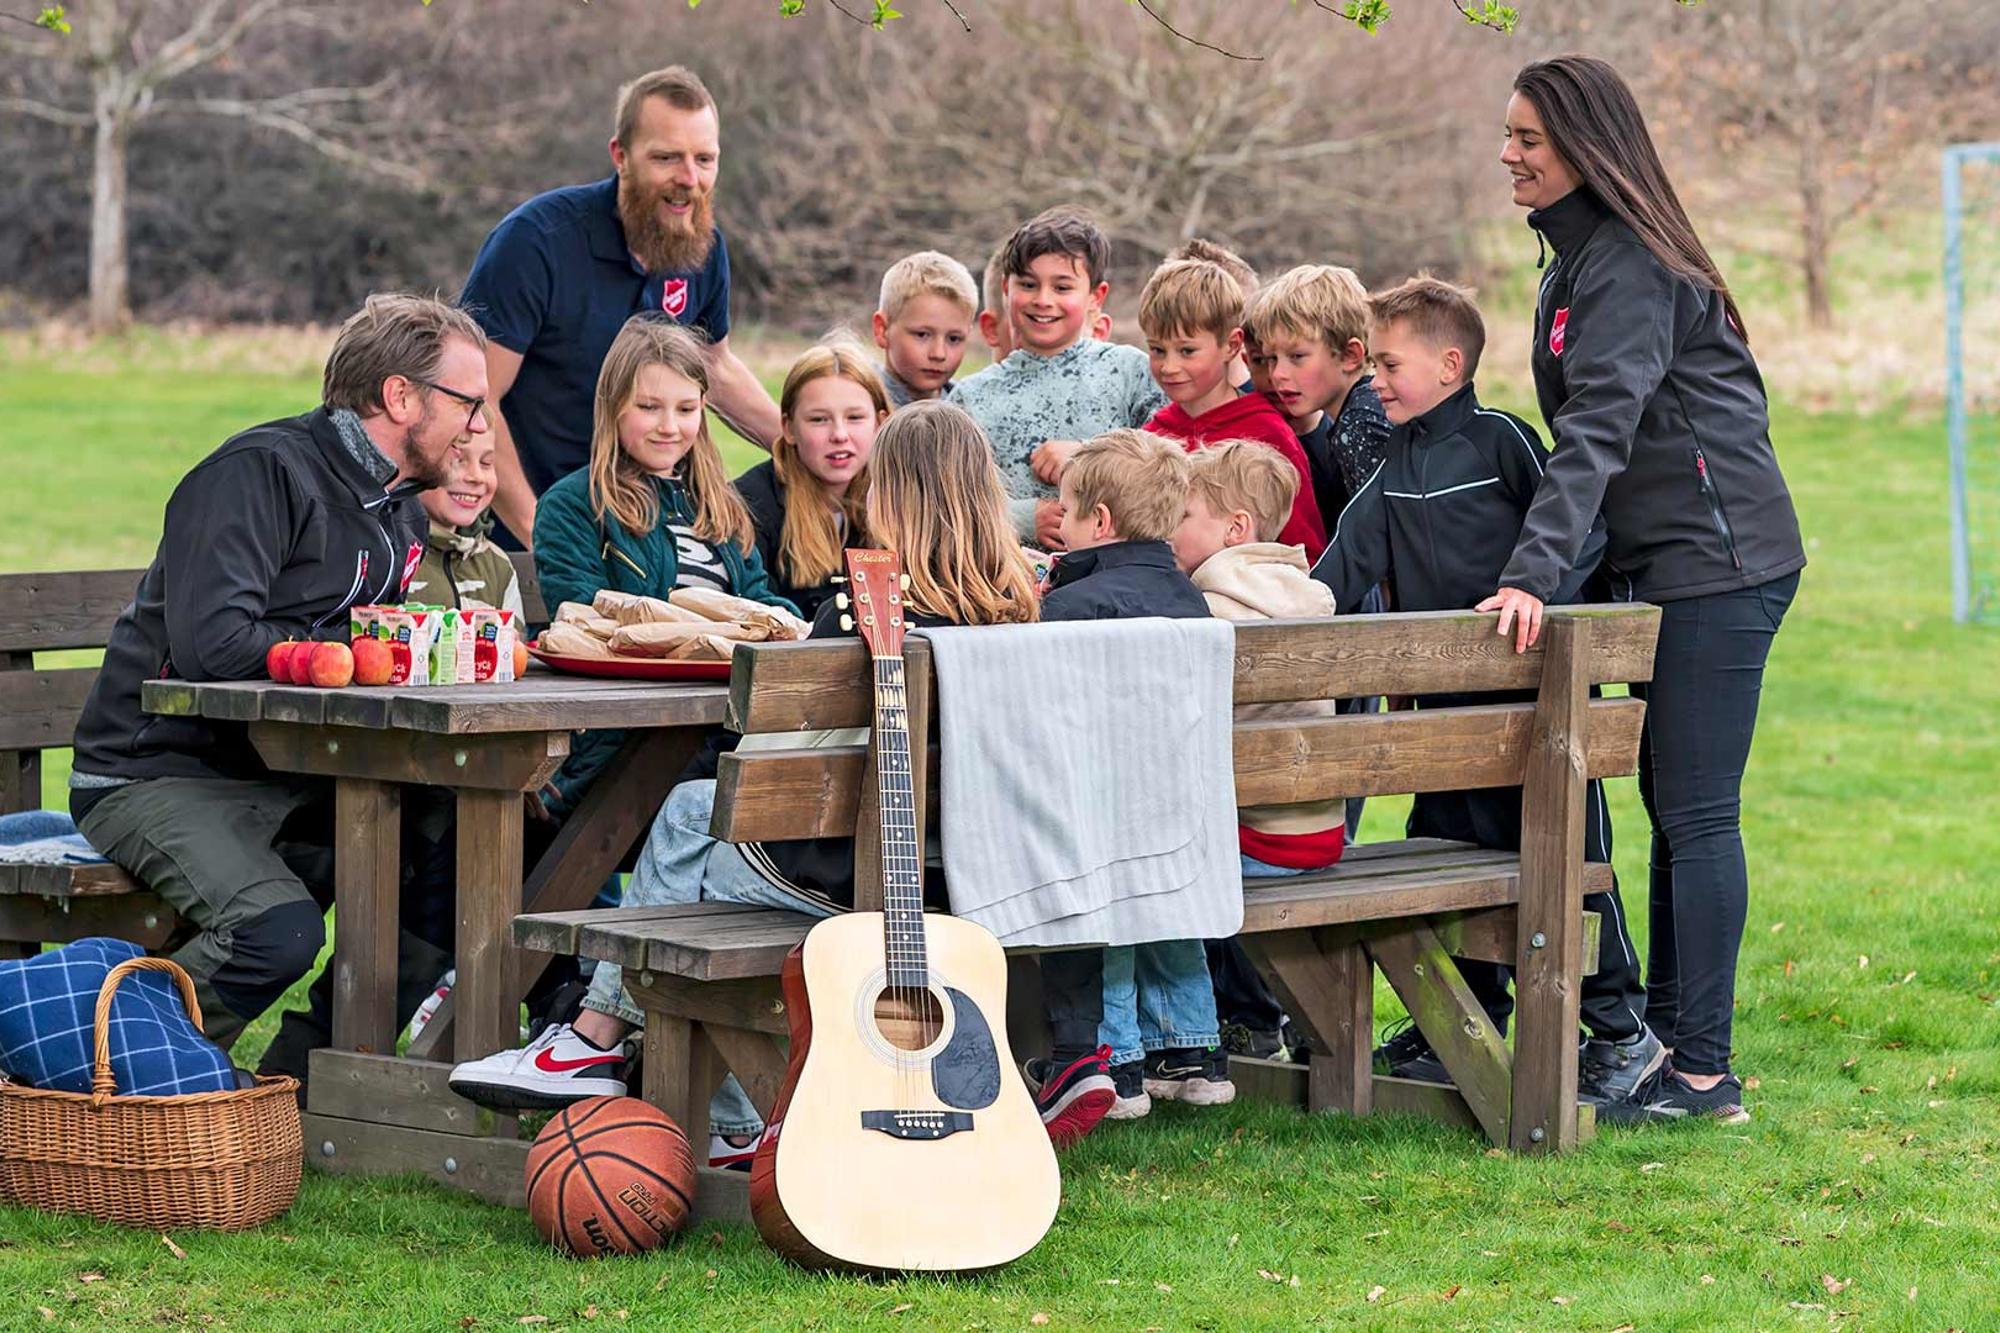 Tre personer från Frälsningsarmén tillsammans med glada barn runt ett picknickbord med frukt, dricka och mackor. Framför bordet ligger det en basketboll och en korg med en filt i. Det står även en gitarr lutad emot bordet.